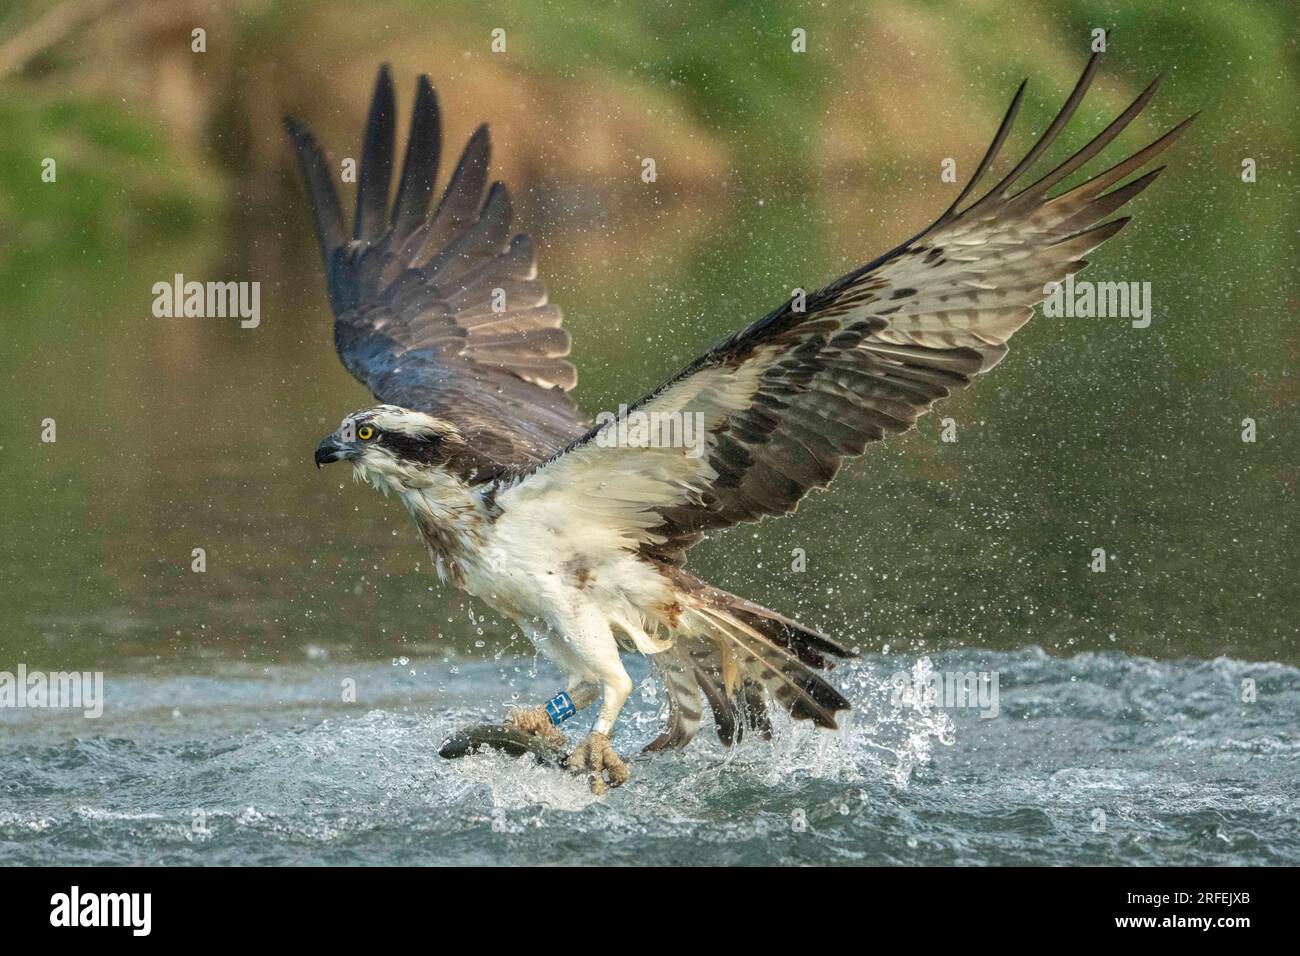 Il falco scivola via. Bourne, Inghilterra: LE SPLENDIDE immagini scattate a Bourne mostrano un esperto falco pescatore che fa una bella immersione e cattura il suo pasto del giorno Foto Stock